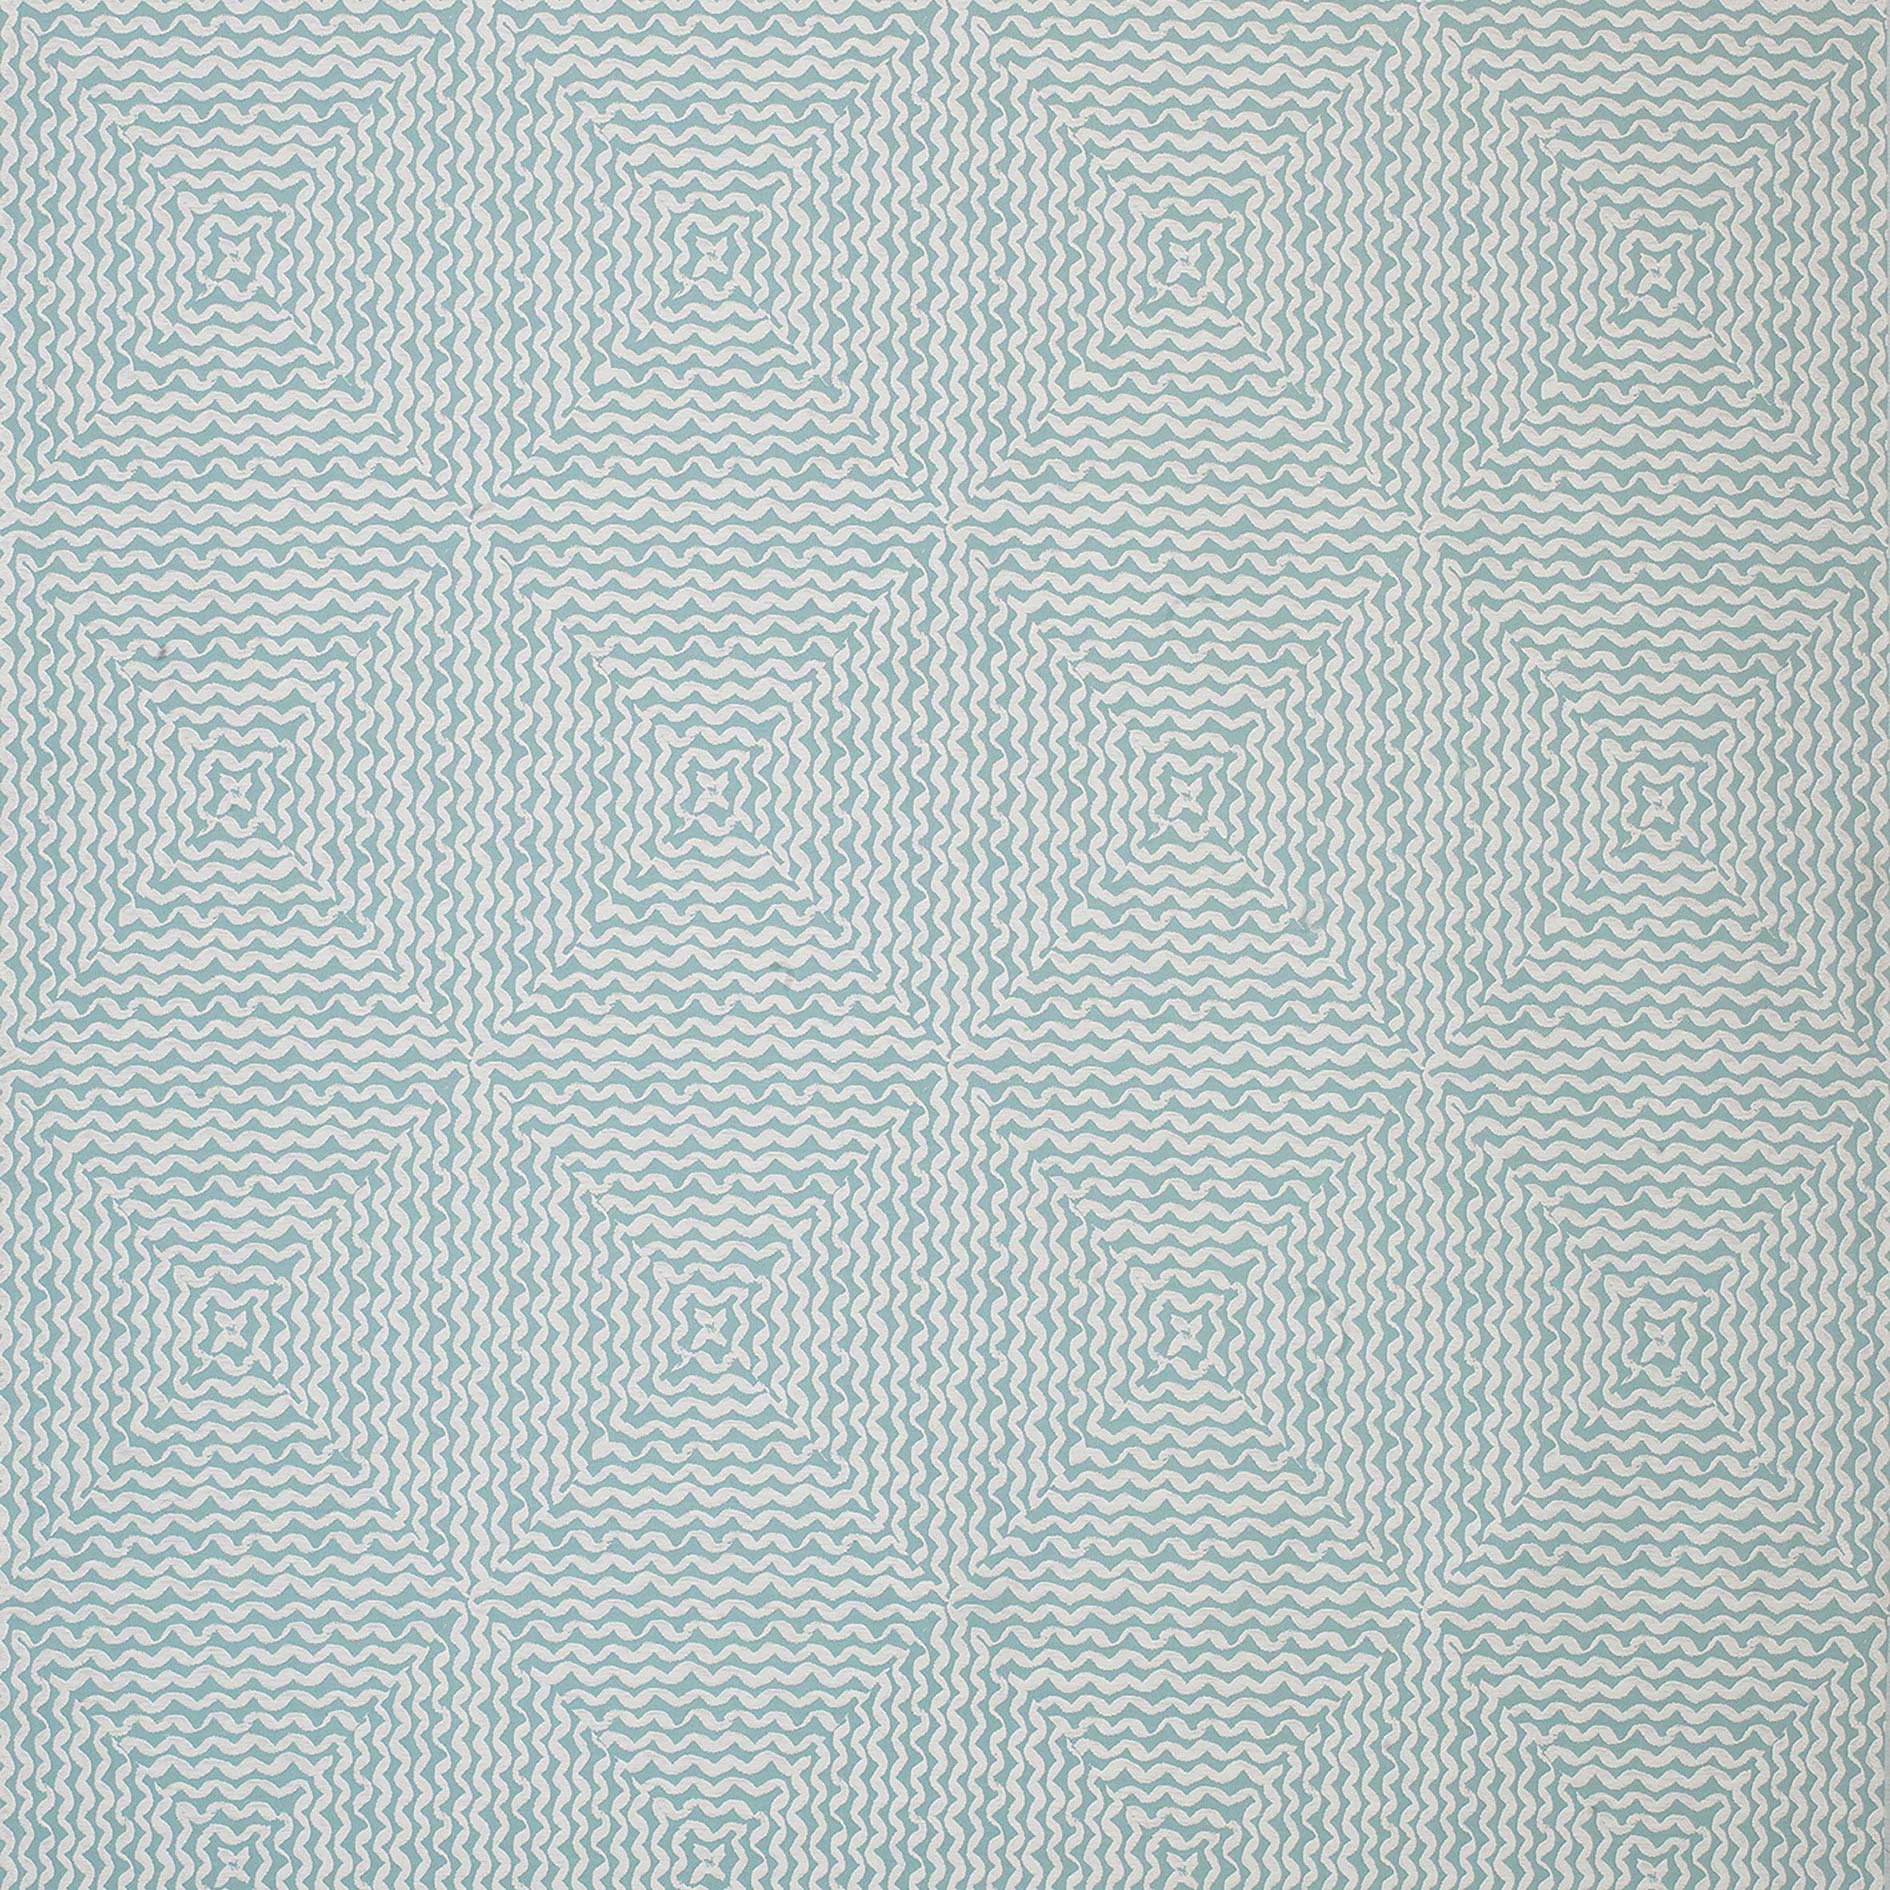 Nina Campbell Fabric - Les Rêves Mourlot Aqua NCF4293-02